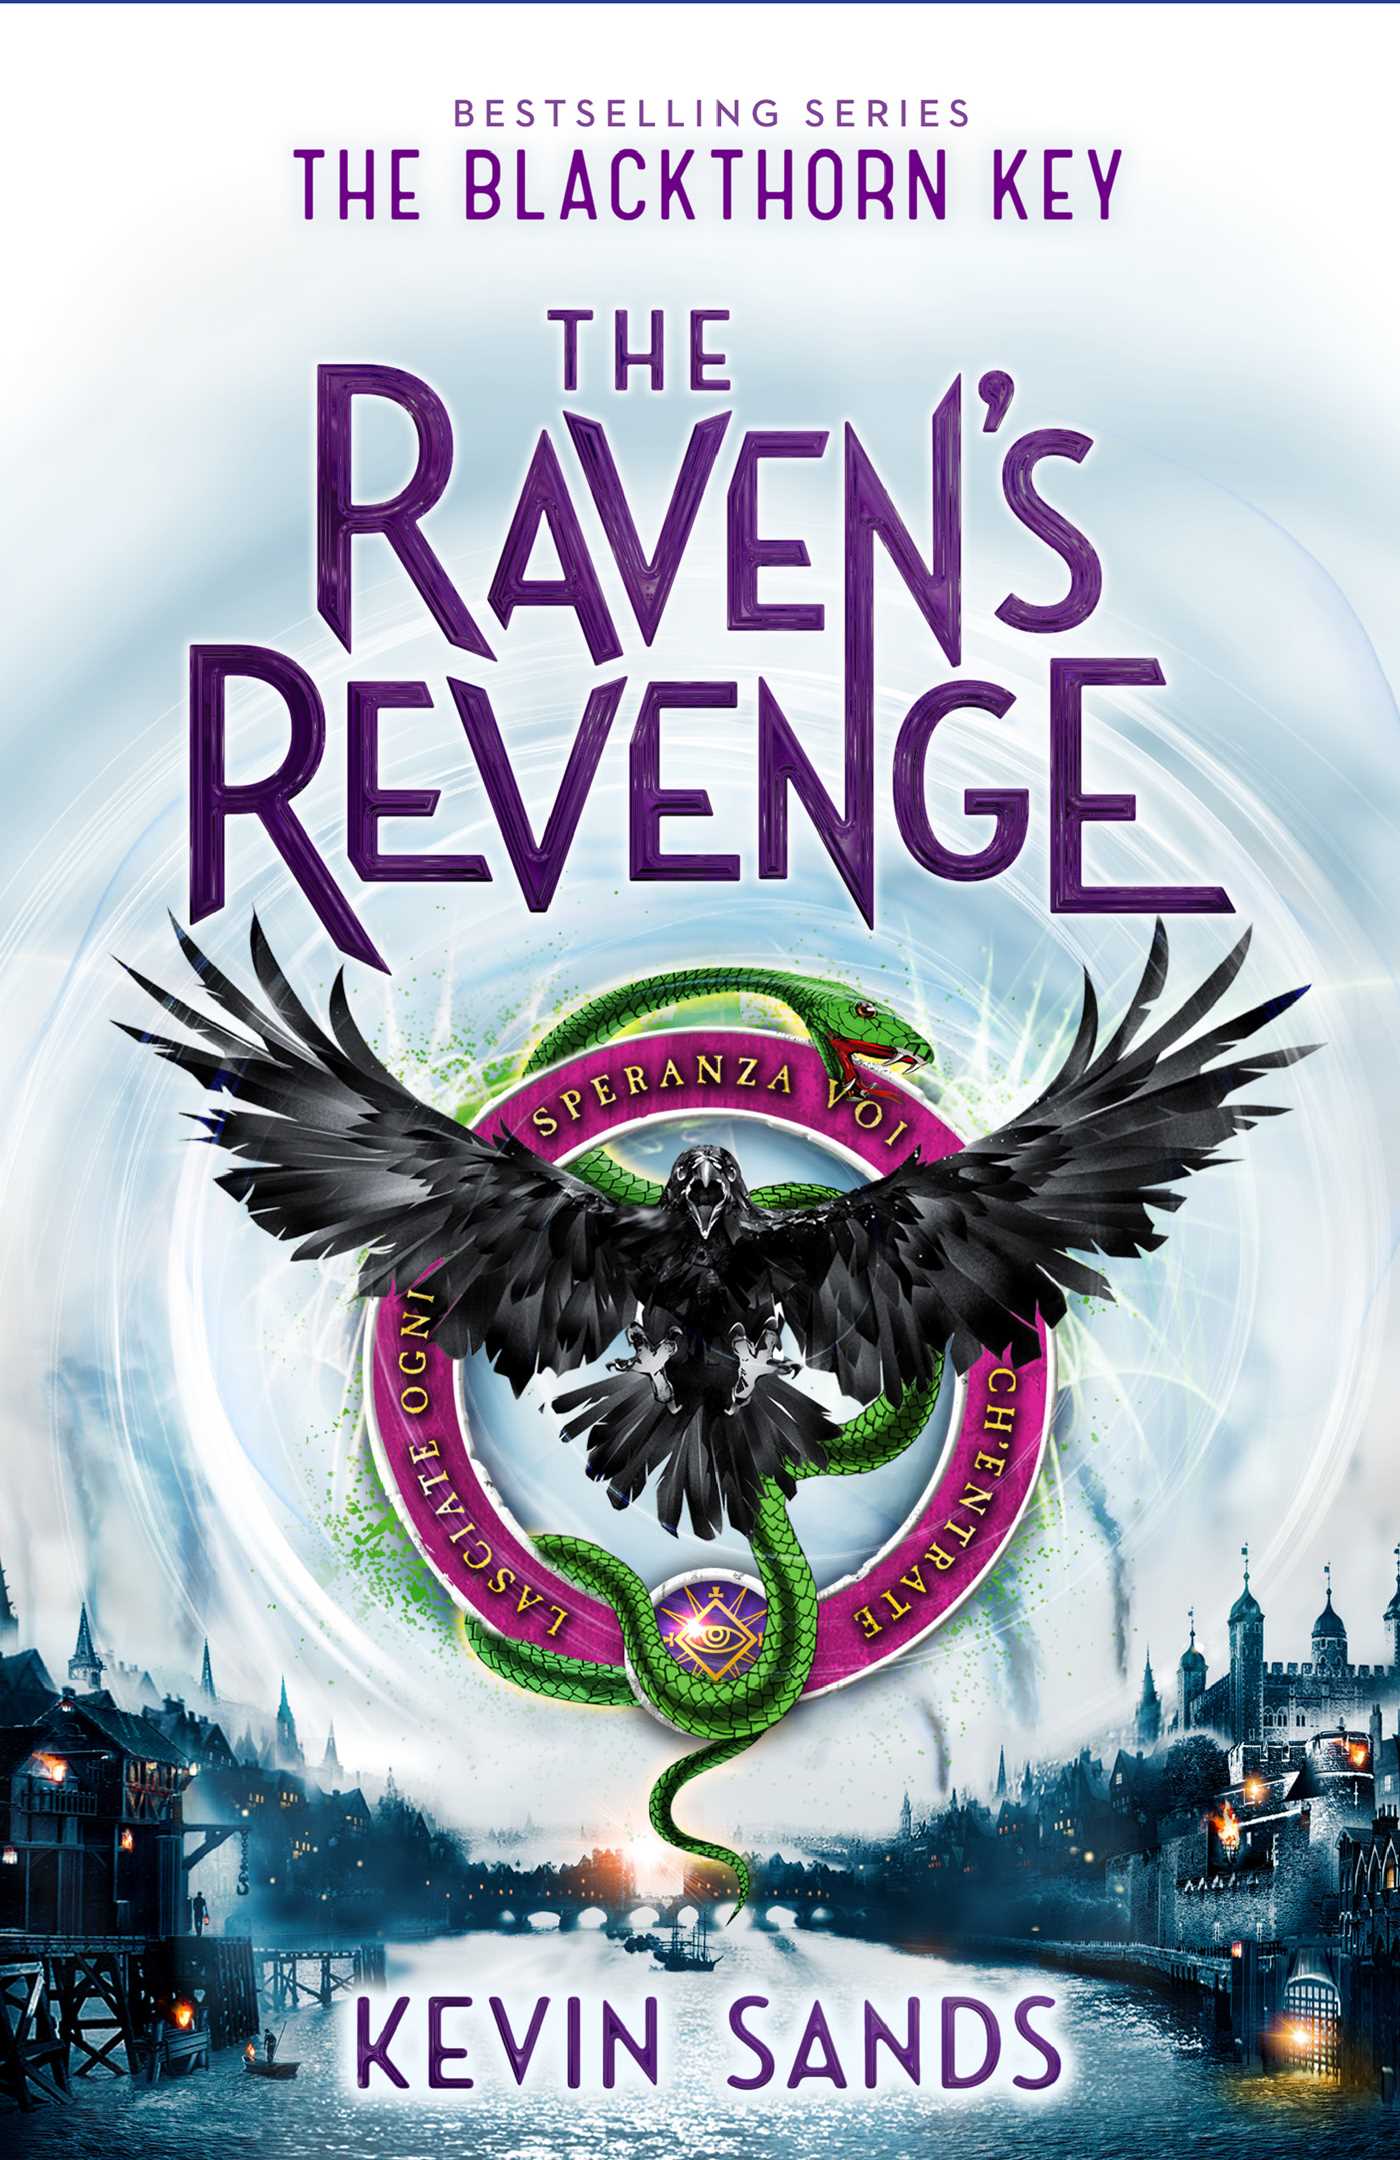 Cover art for Kevin Sand's Raven's Revenge